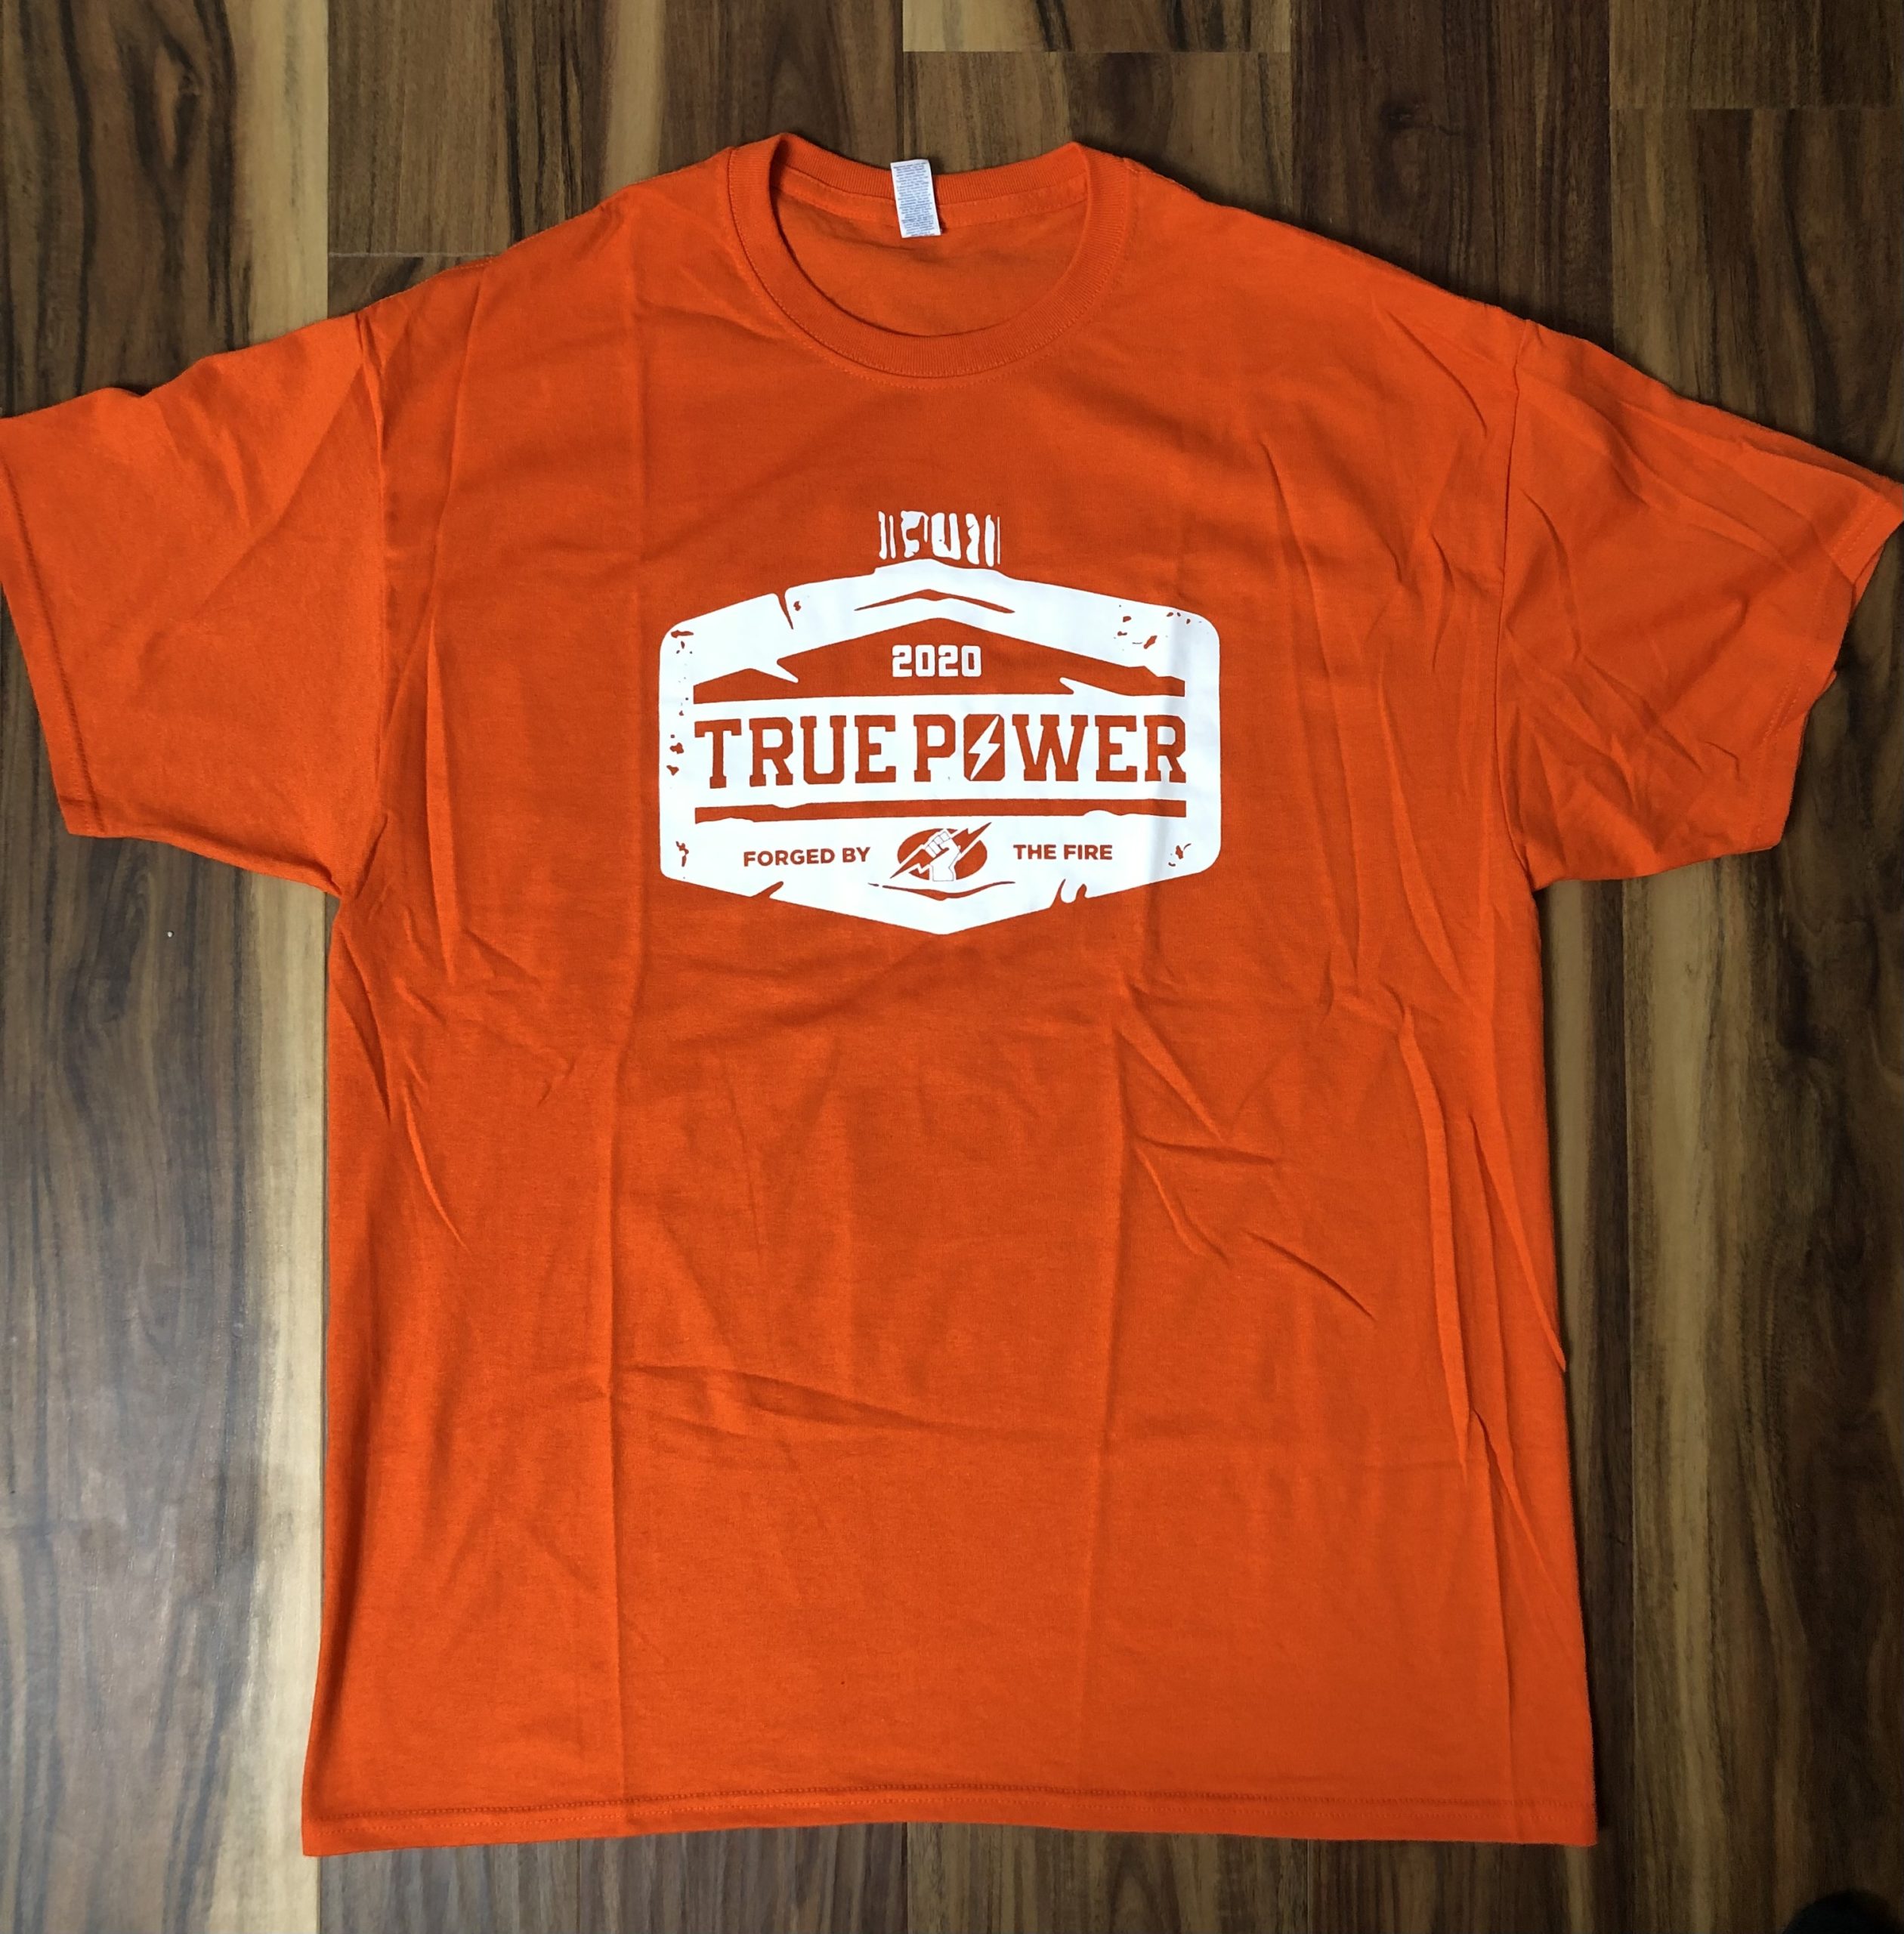 2020 Orange True Power Tee - PA Power Wrestling